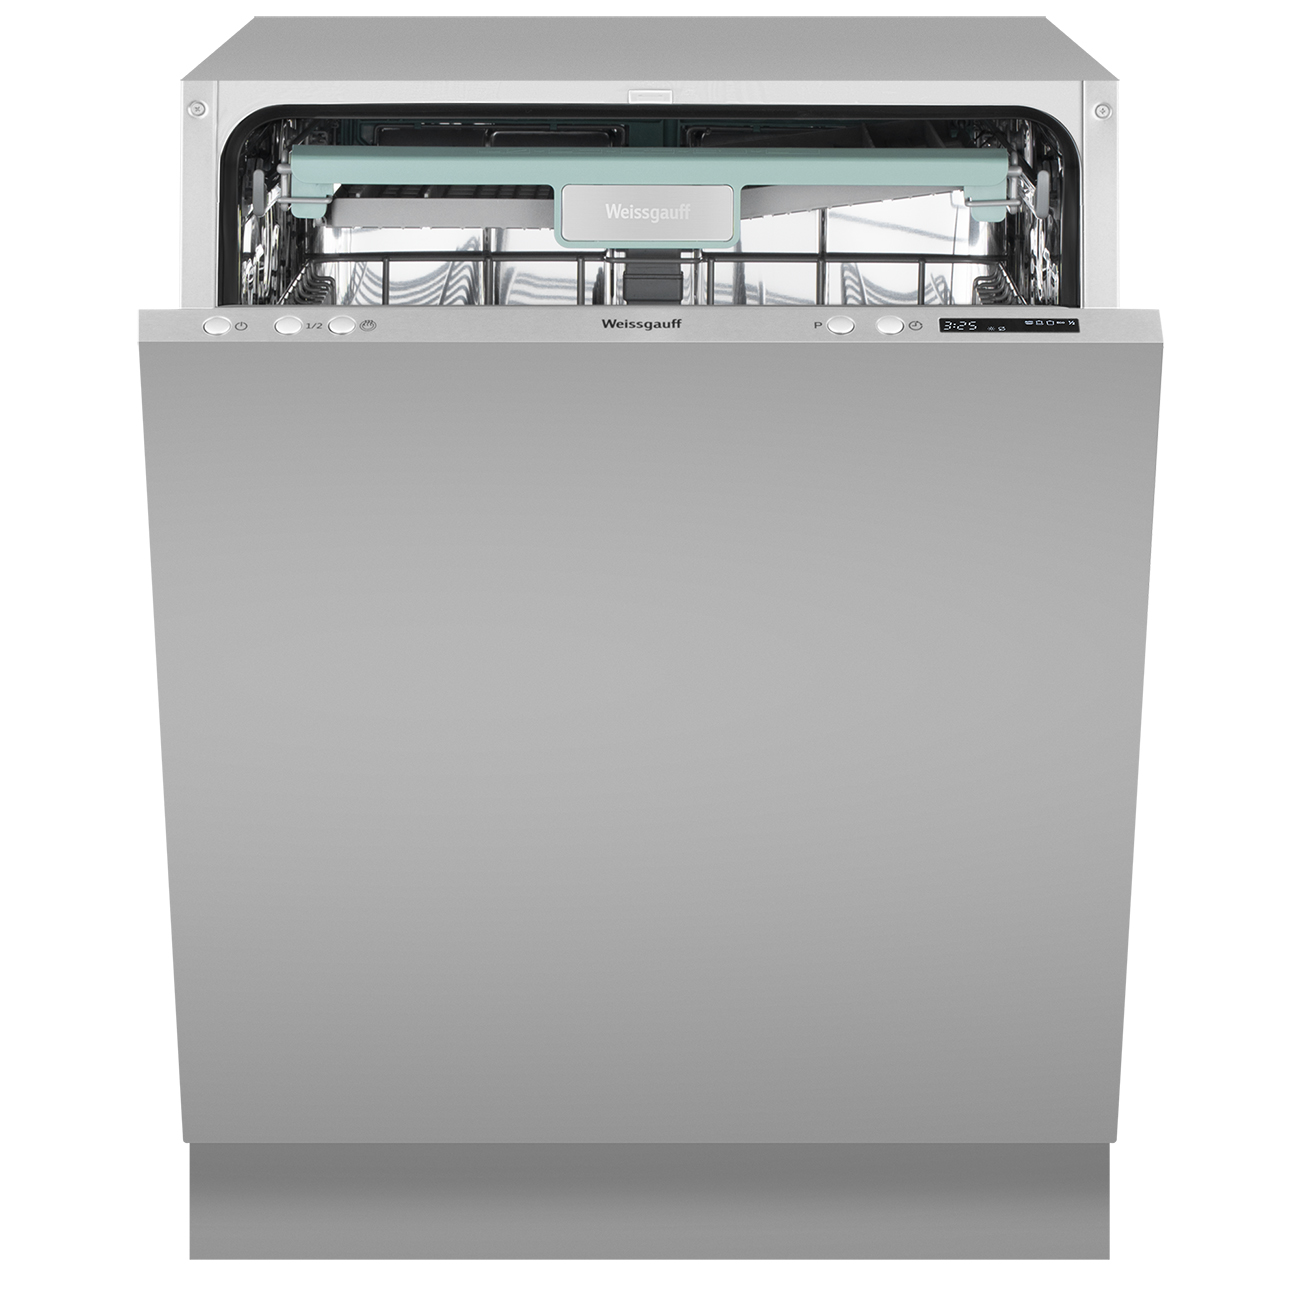 Встраиваемая посудомоечная машина Weissgauff BDW 6043 D посудомоечная машина weissgauff tdw 4017 d